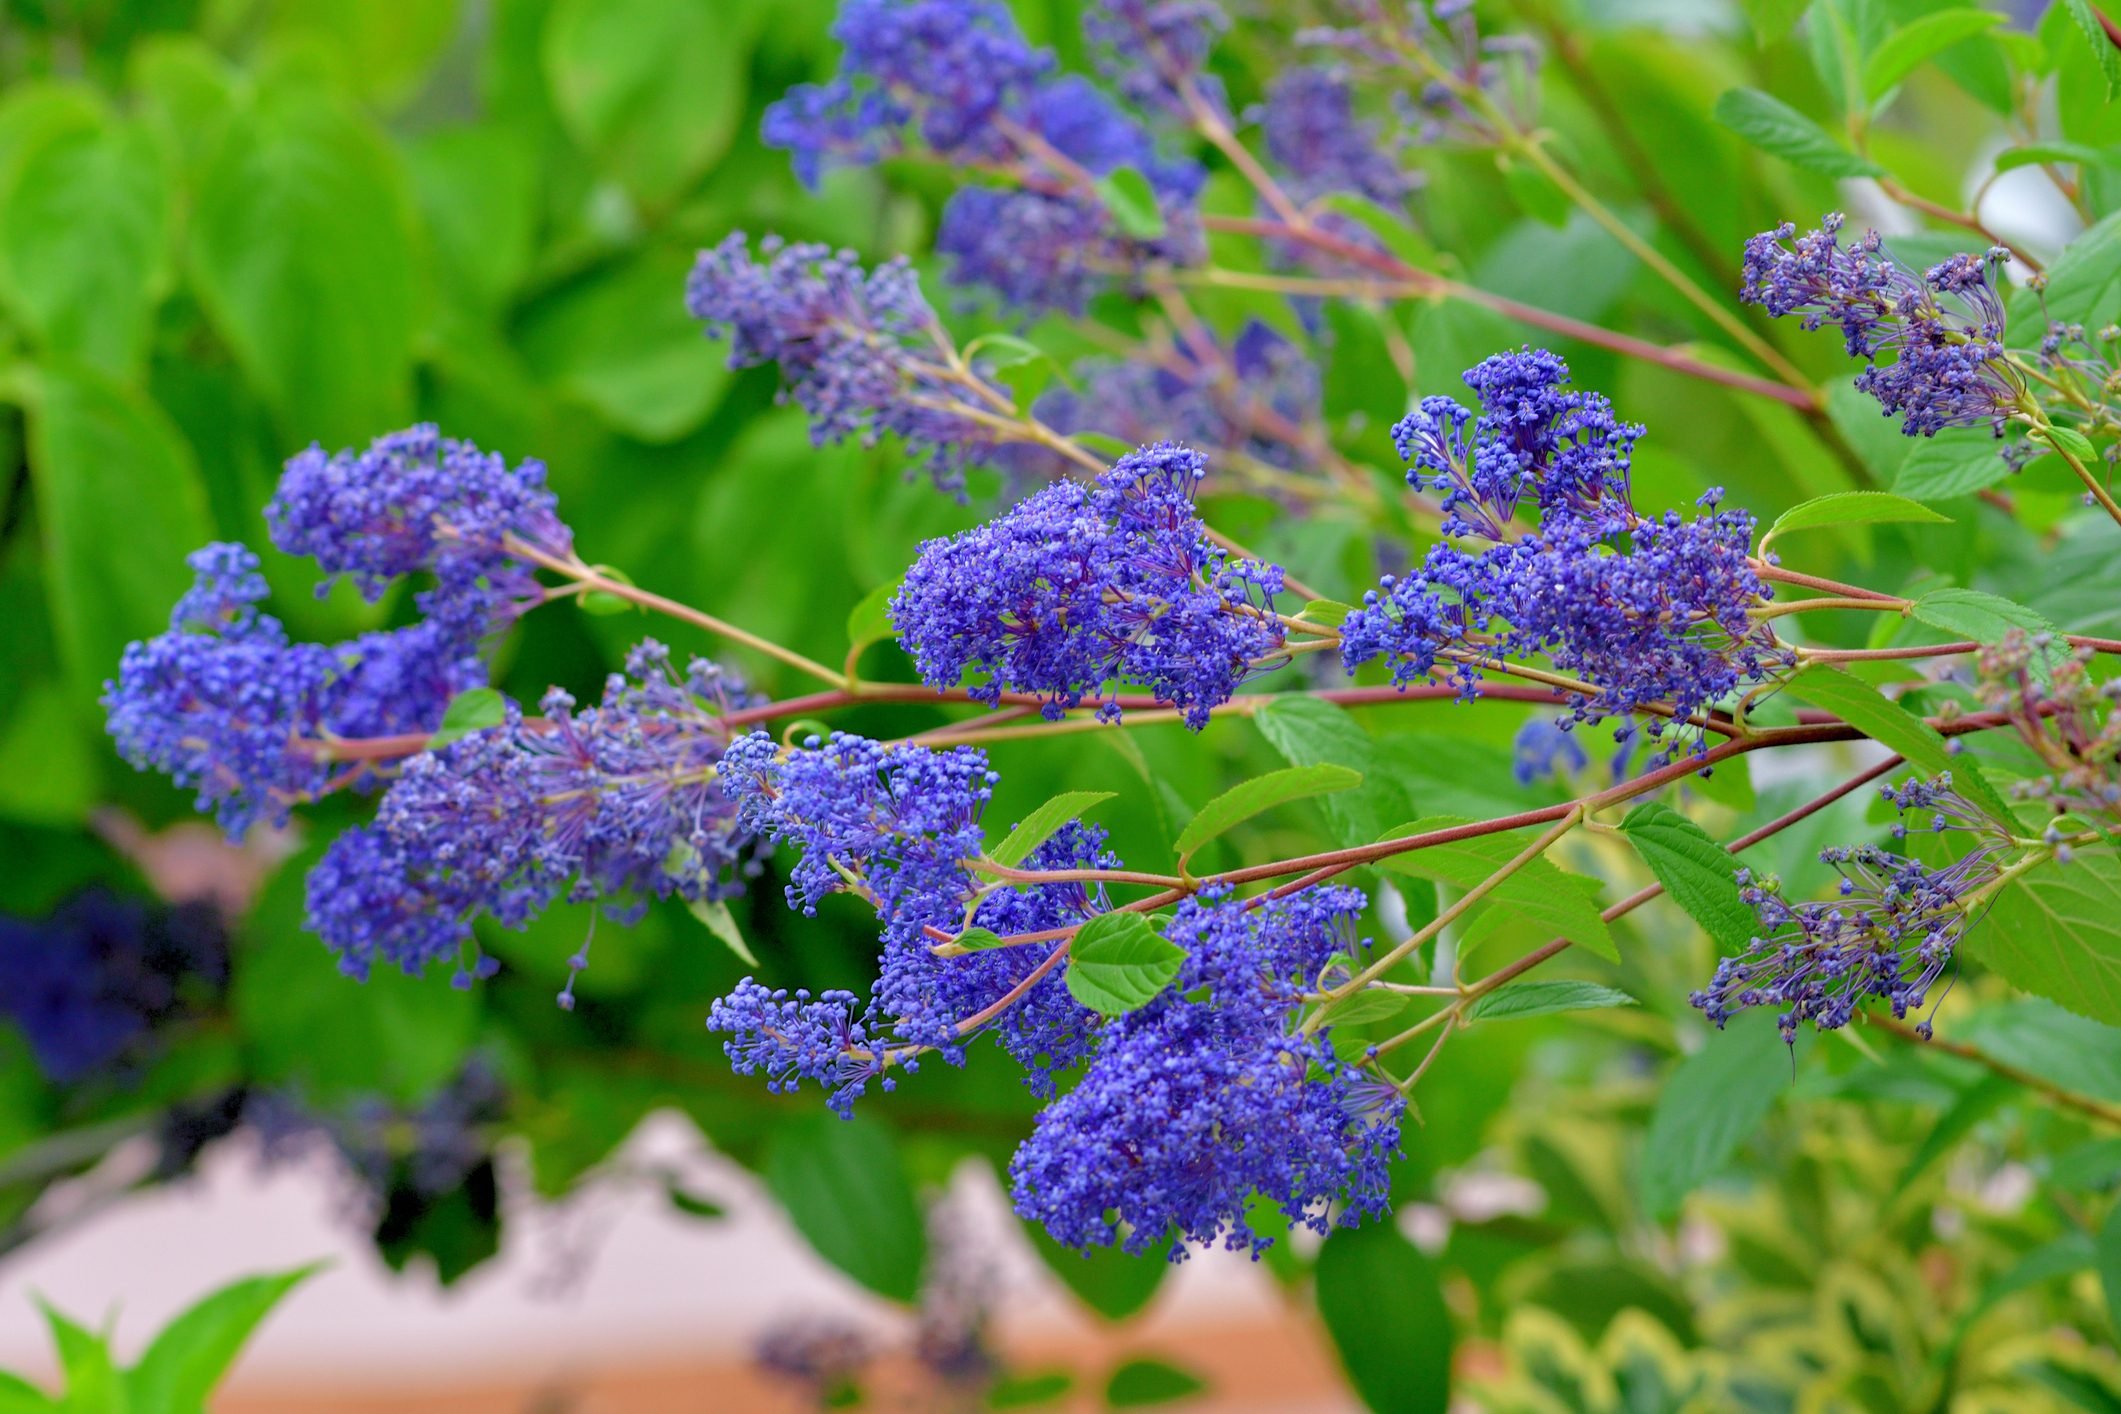 Ceanothus thyrsiflorus / Blue Blossom / California Lilac